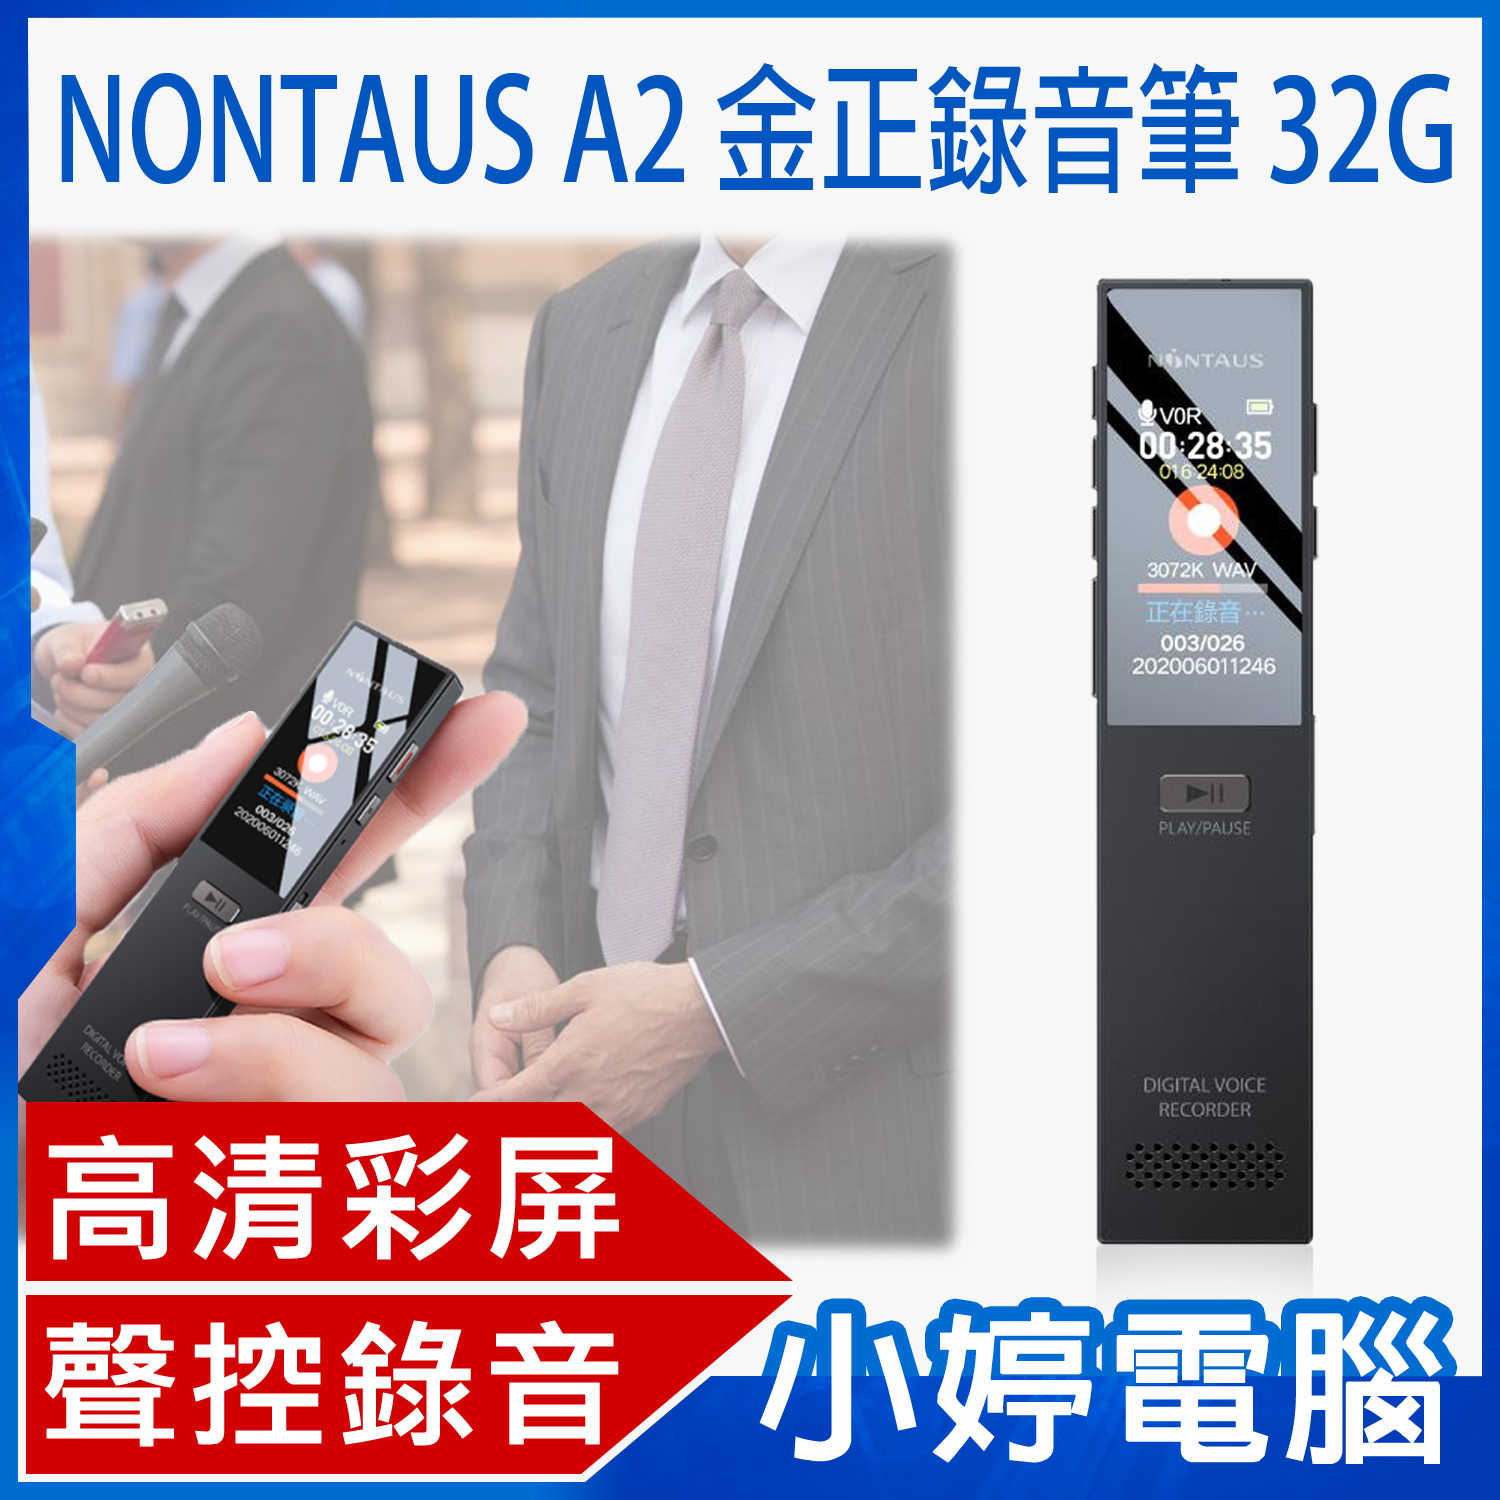 【小婷電腦】NONTAUS A2 金正錄音筆 32G 高畫質彩屏 聲控錄音 遠距錄音 無損音質 輕薄便攜